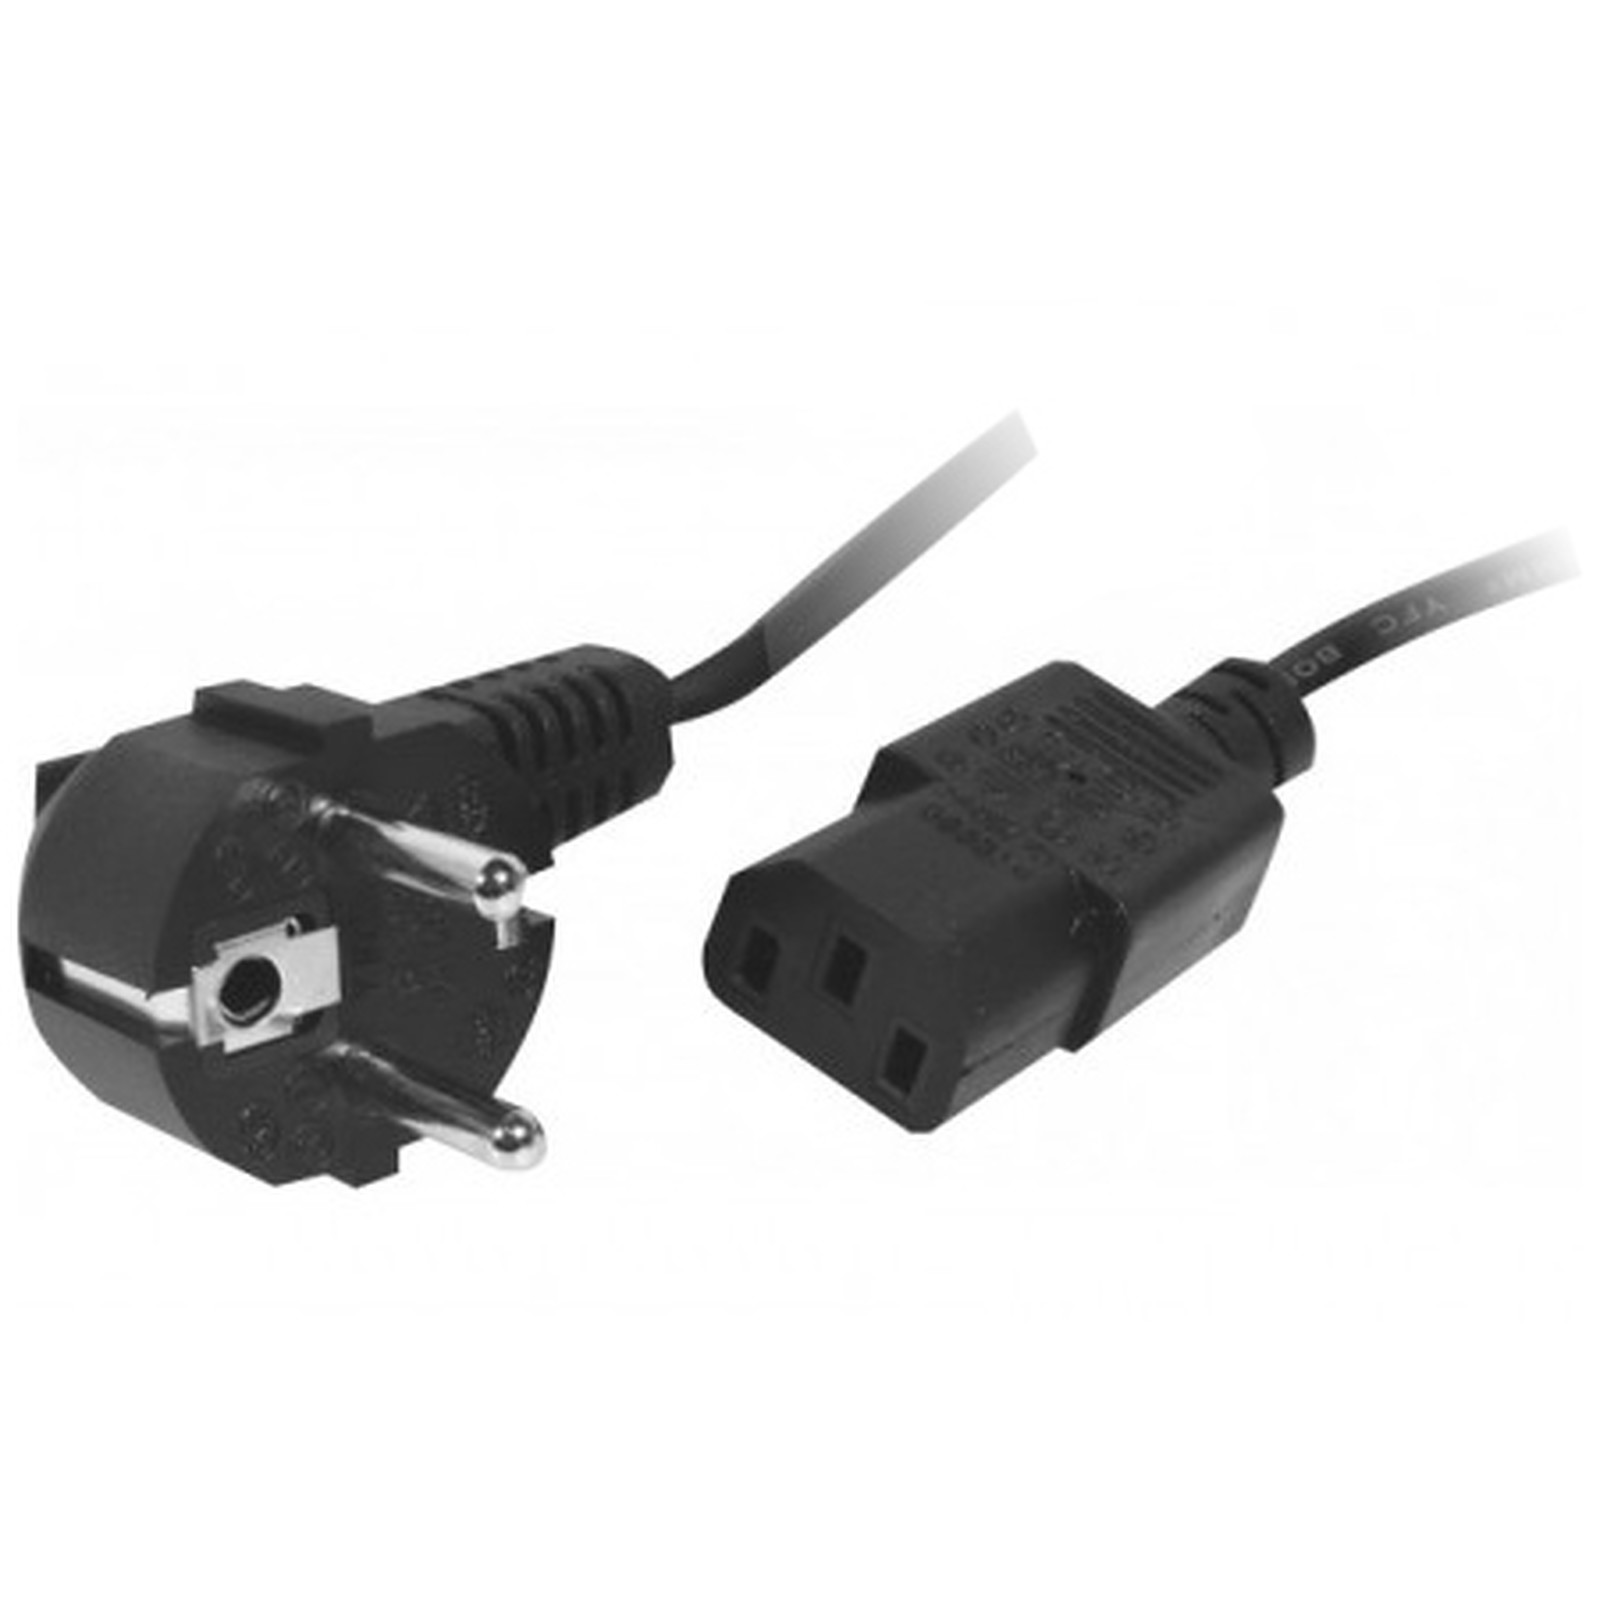 Cable d'alimentation pour PC, moniteur et onduleur (0.5 m) - Cable Secteur Generique